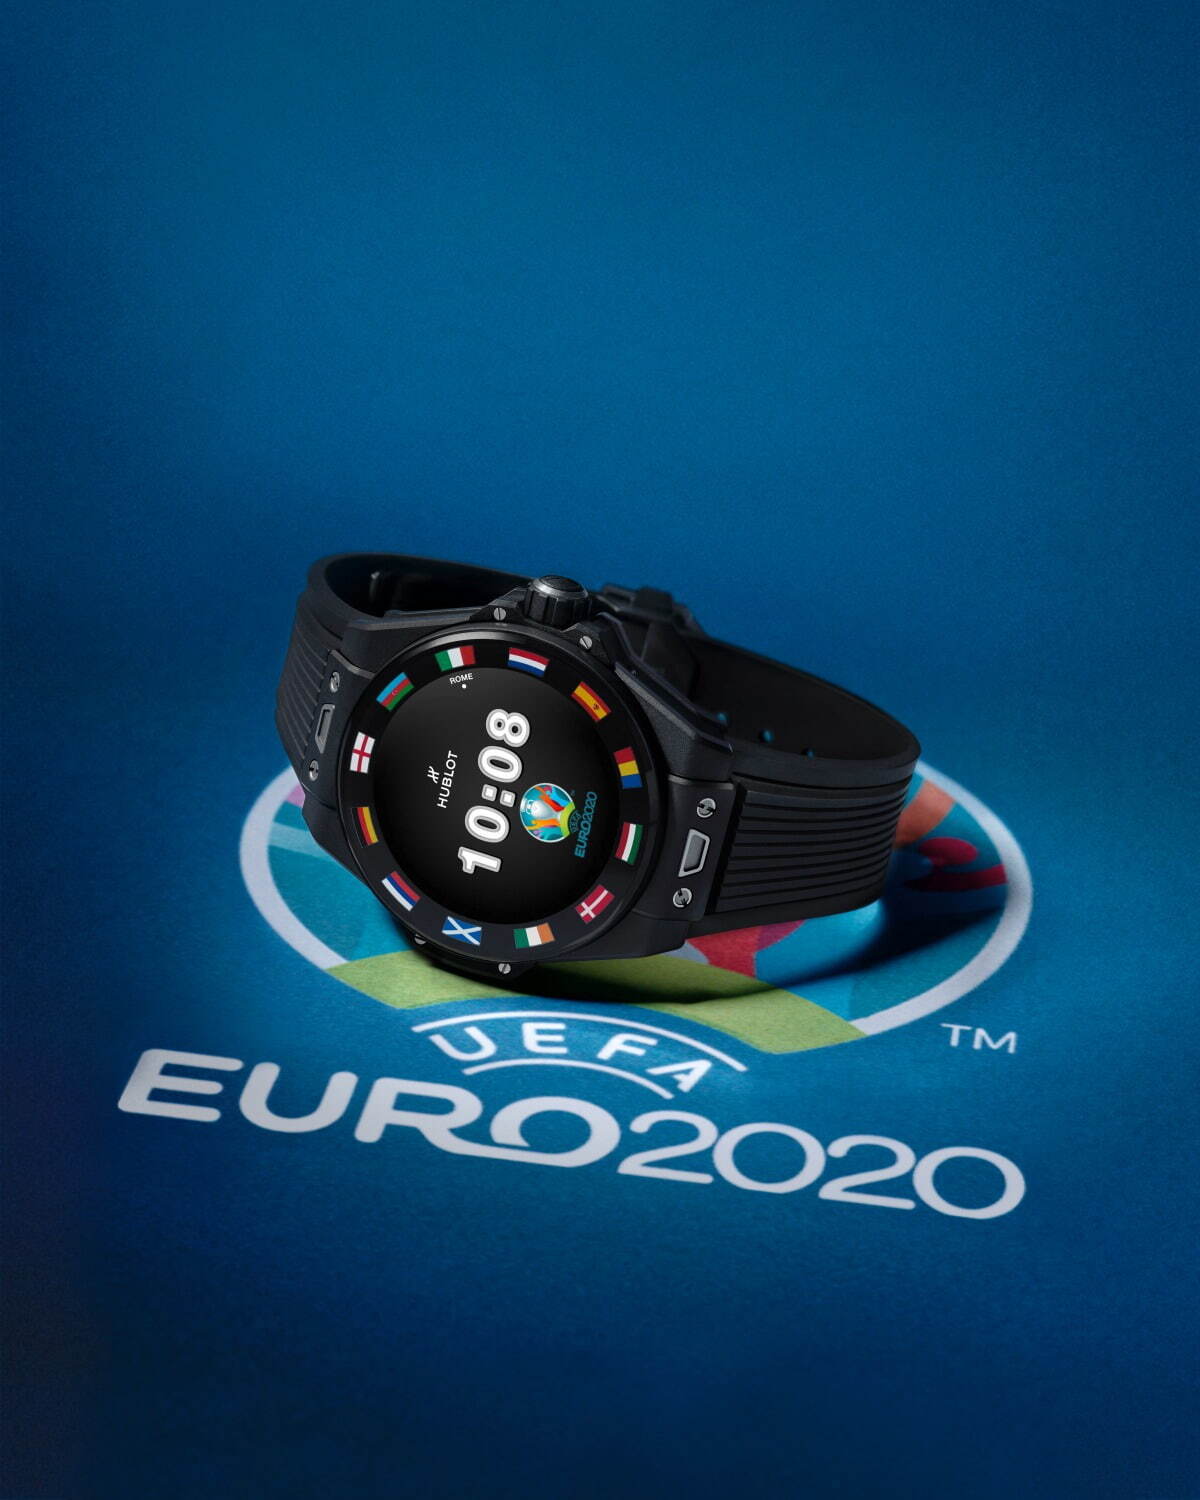 ウブロの腕時計 ビッグ バン 新作 サッカー専用アプリでuefa欧州選手権の試合状況リアルタイム受信 ファッションプレス